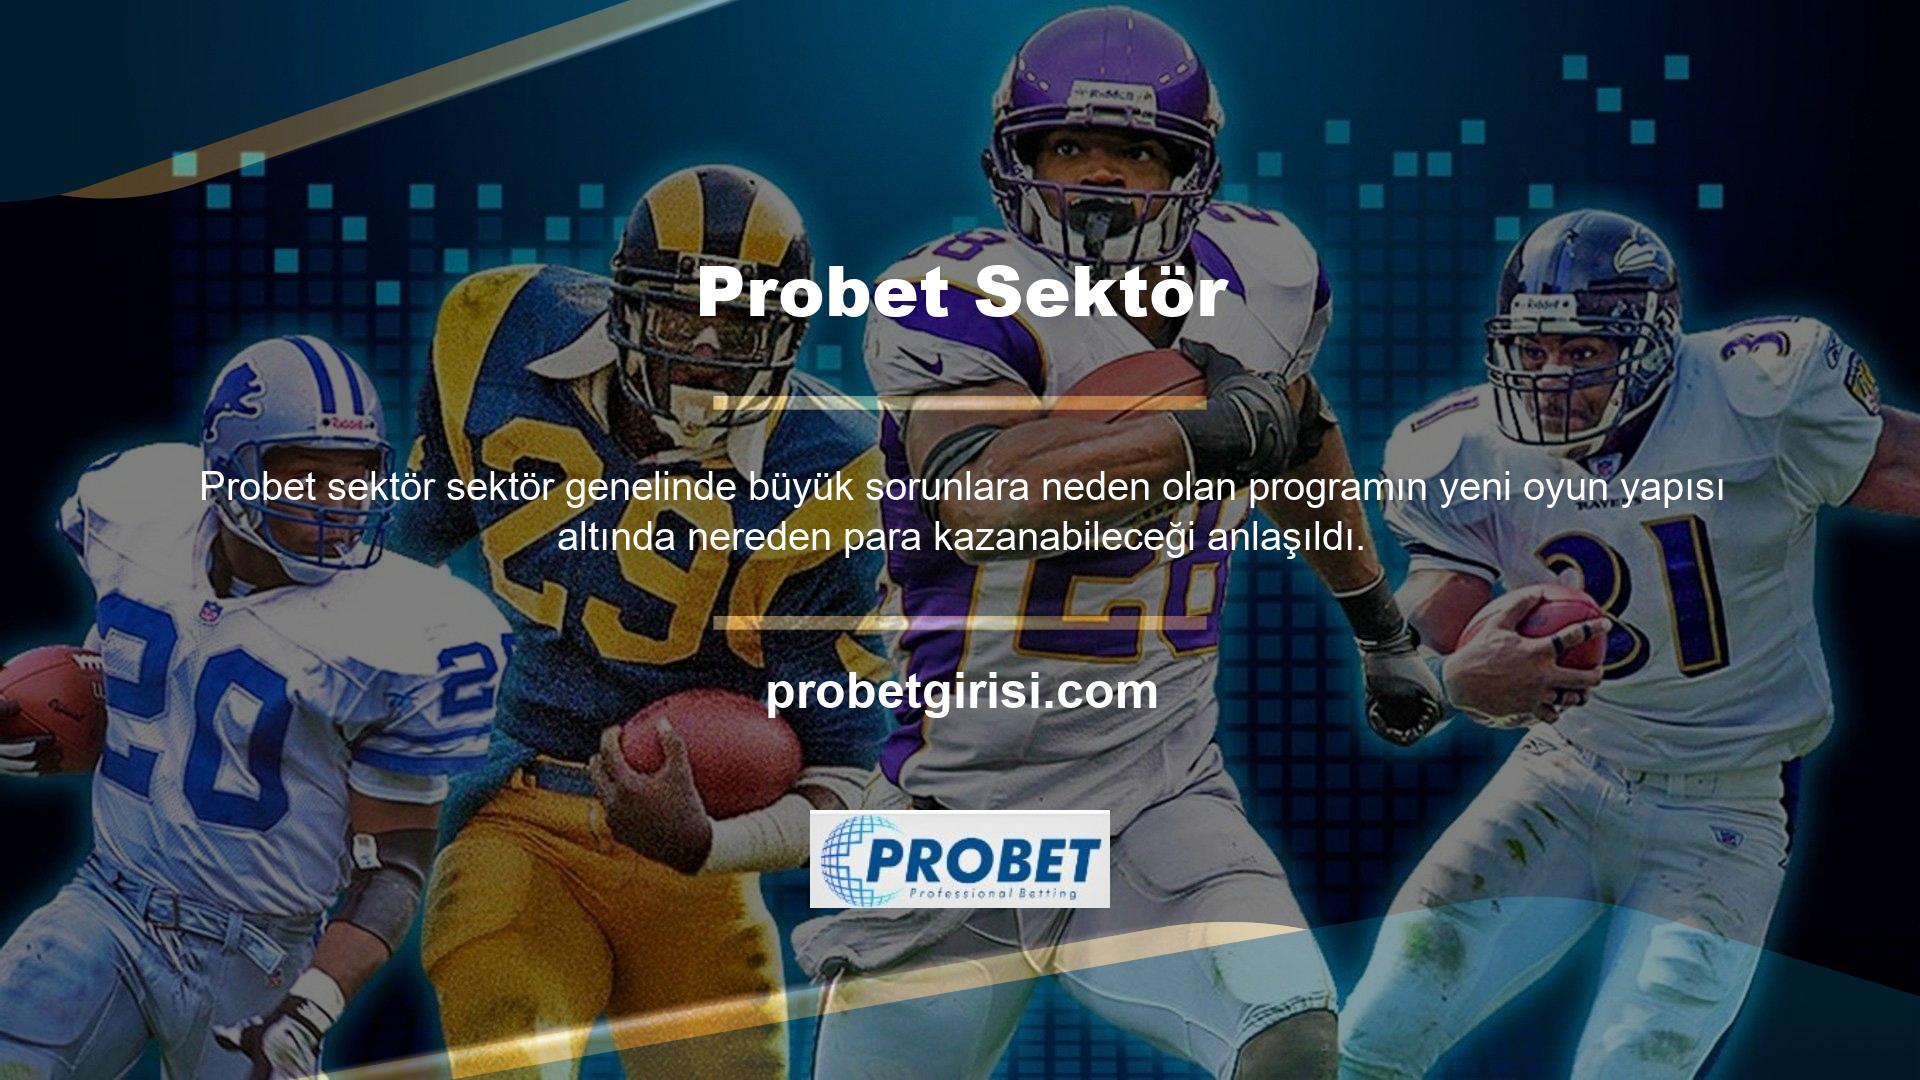 Probet Sportsbook olumlu haberlere bakıldığında özellikle futbolda yeni veriler ve ilişkili değerlerle müşterilerini güncelliyor